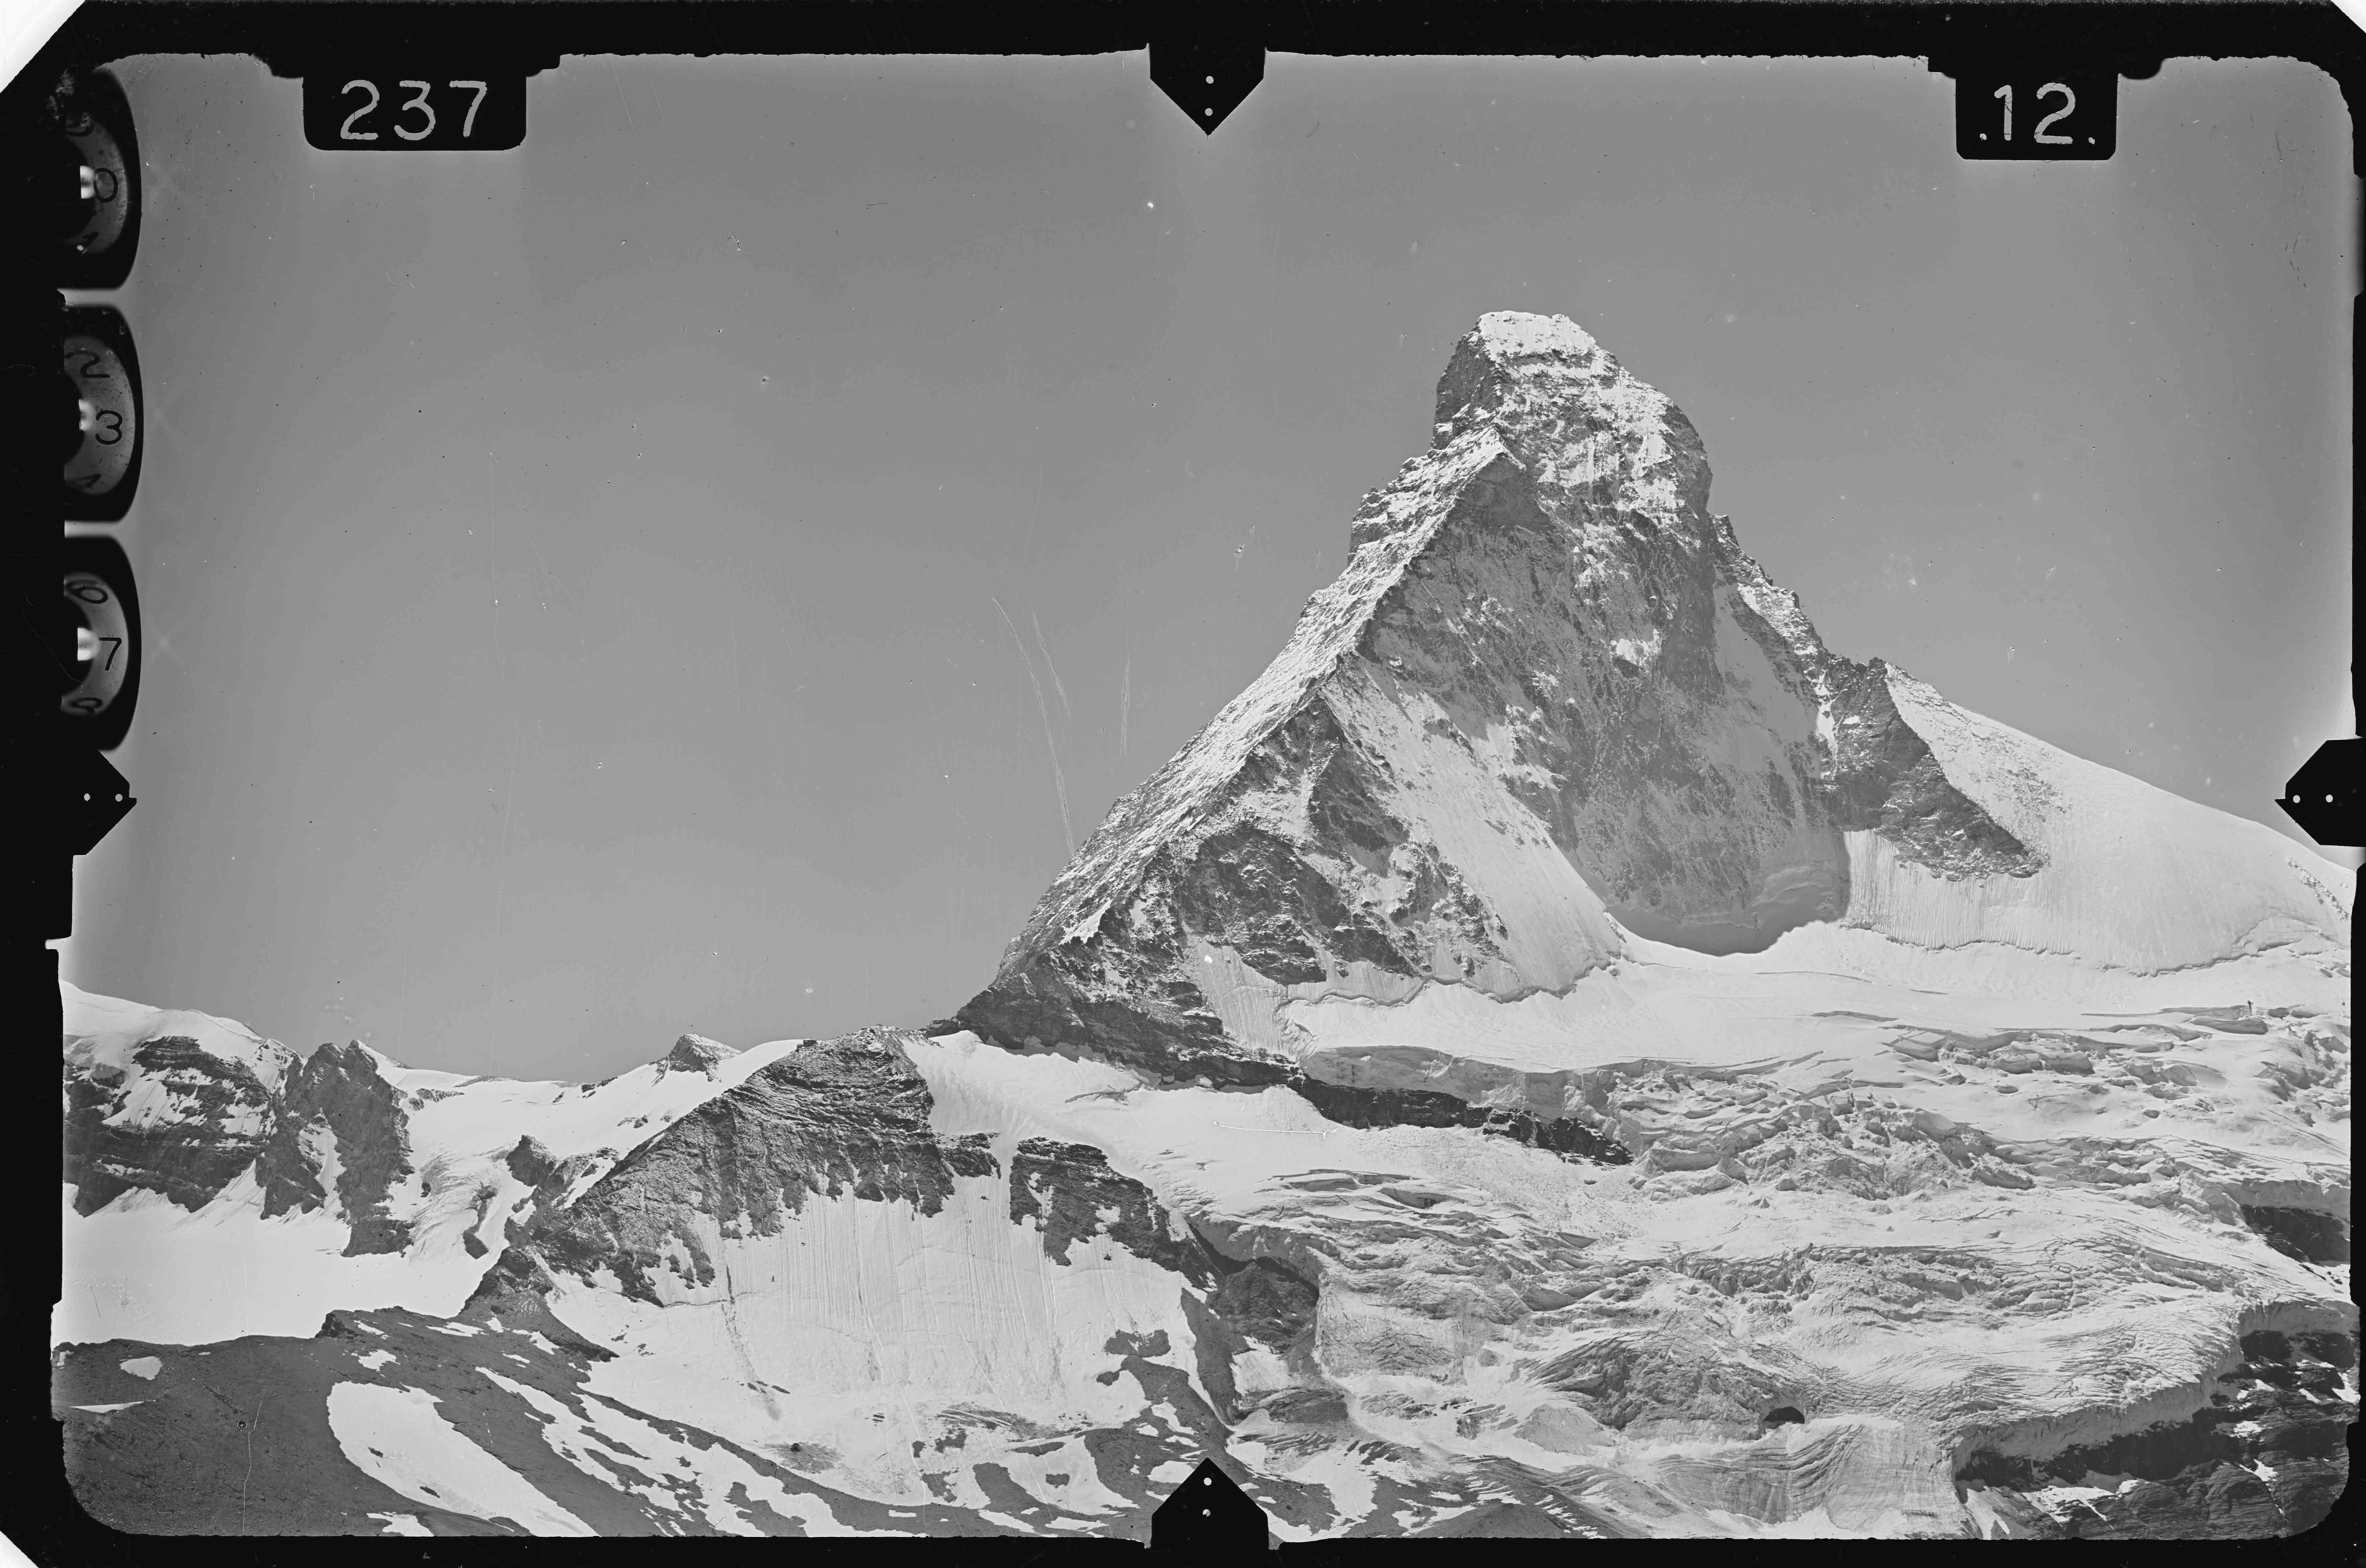 Messbild des schneebedeckten Matterhorns. Am Rand der Fotografie sind die Rahmenmarken des Messbilds zu sehen.